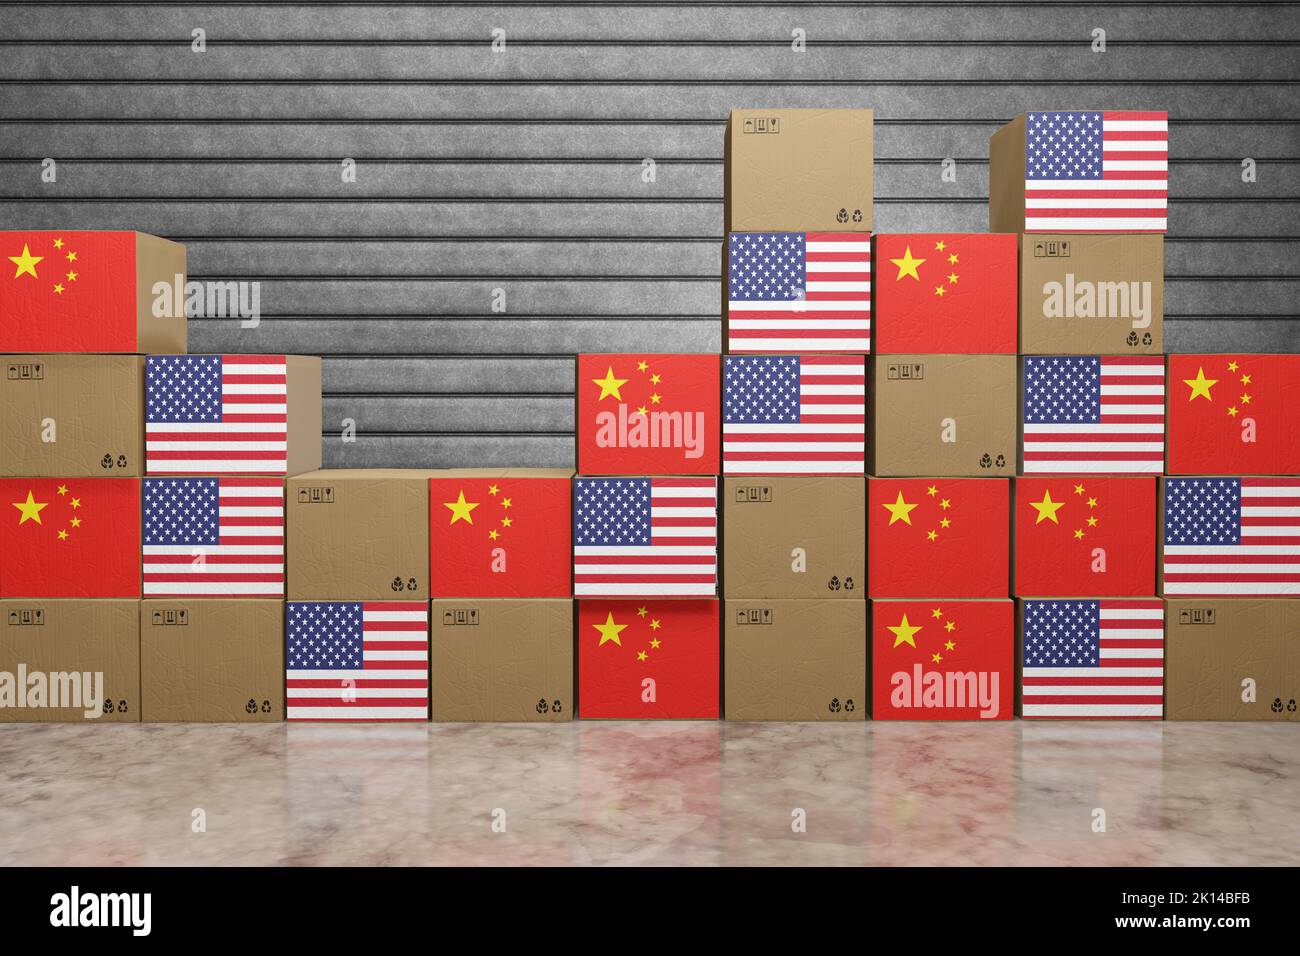 Stapel von Kartons mit Nationalflaggen der USA und Chinas. Illustration des Handelskrieges, der Einfuhrzölle und des extremen Protektionismus Stockfoto